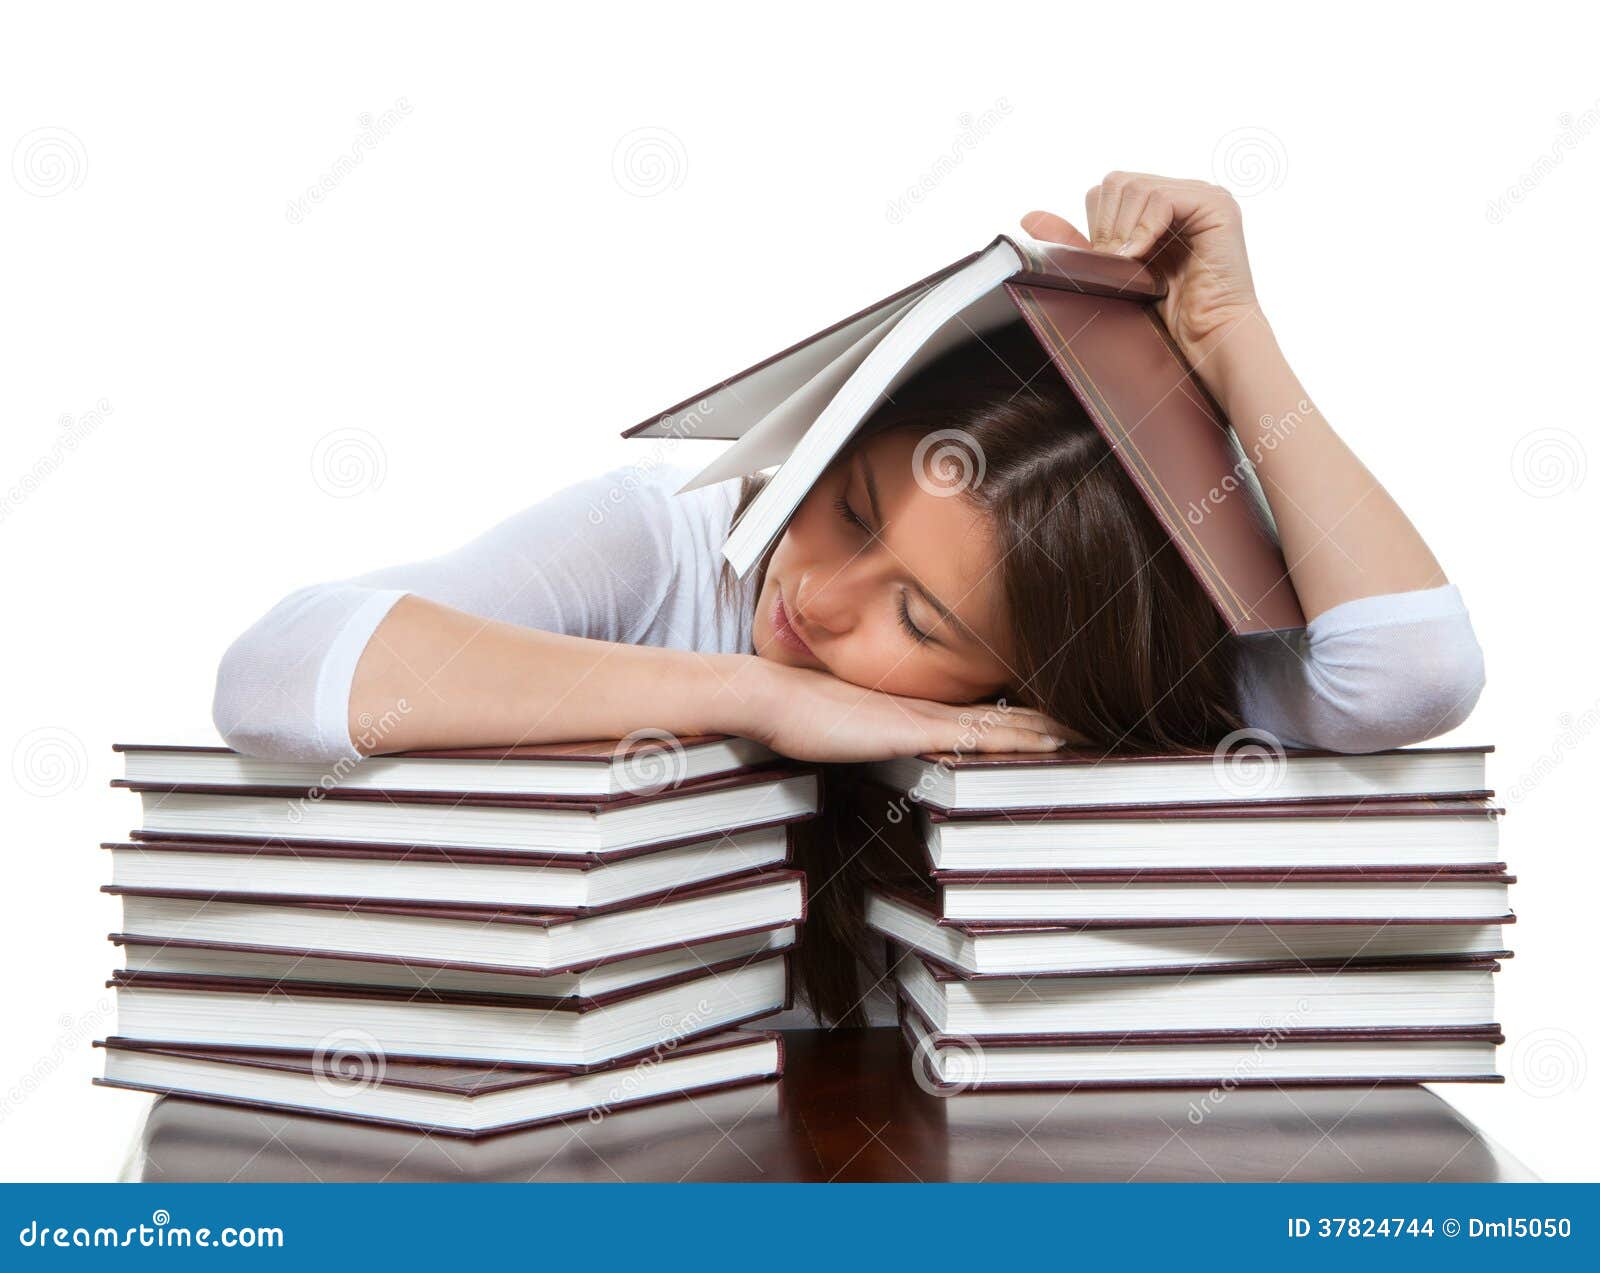 Сон стопка. Девушка со стопкой книг. Человек лежит с книгой.